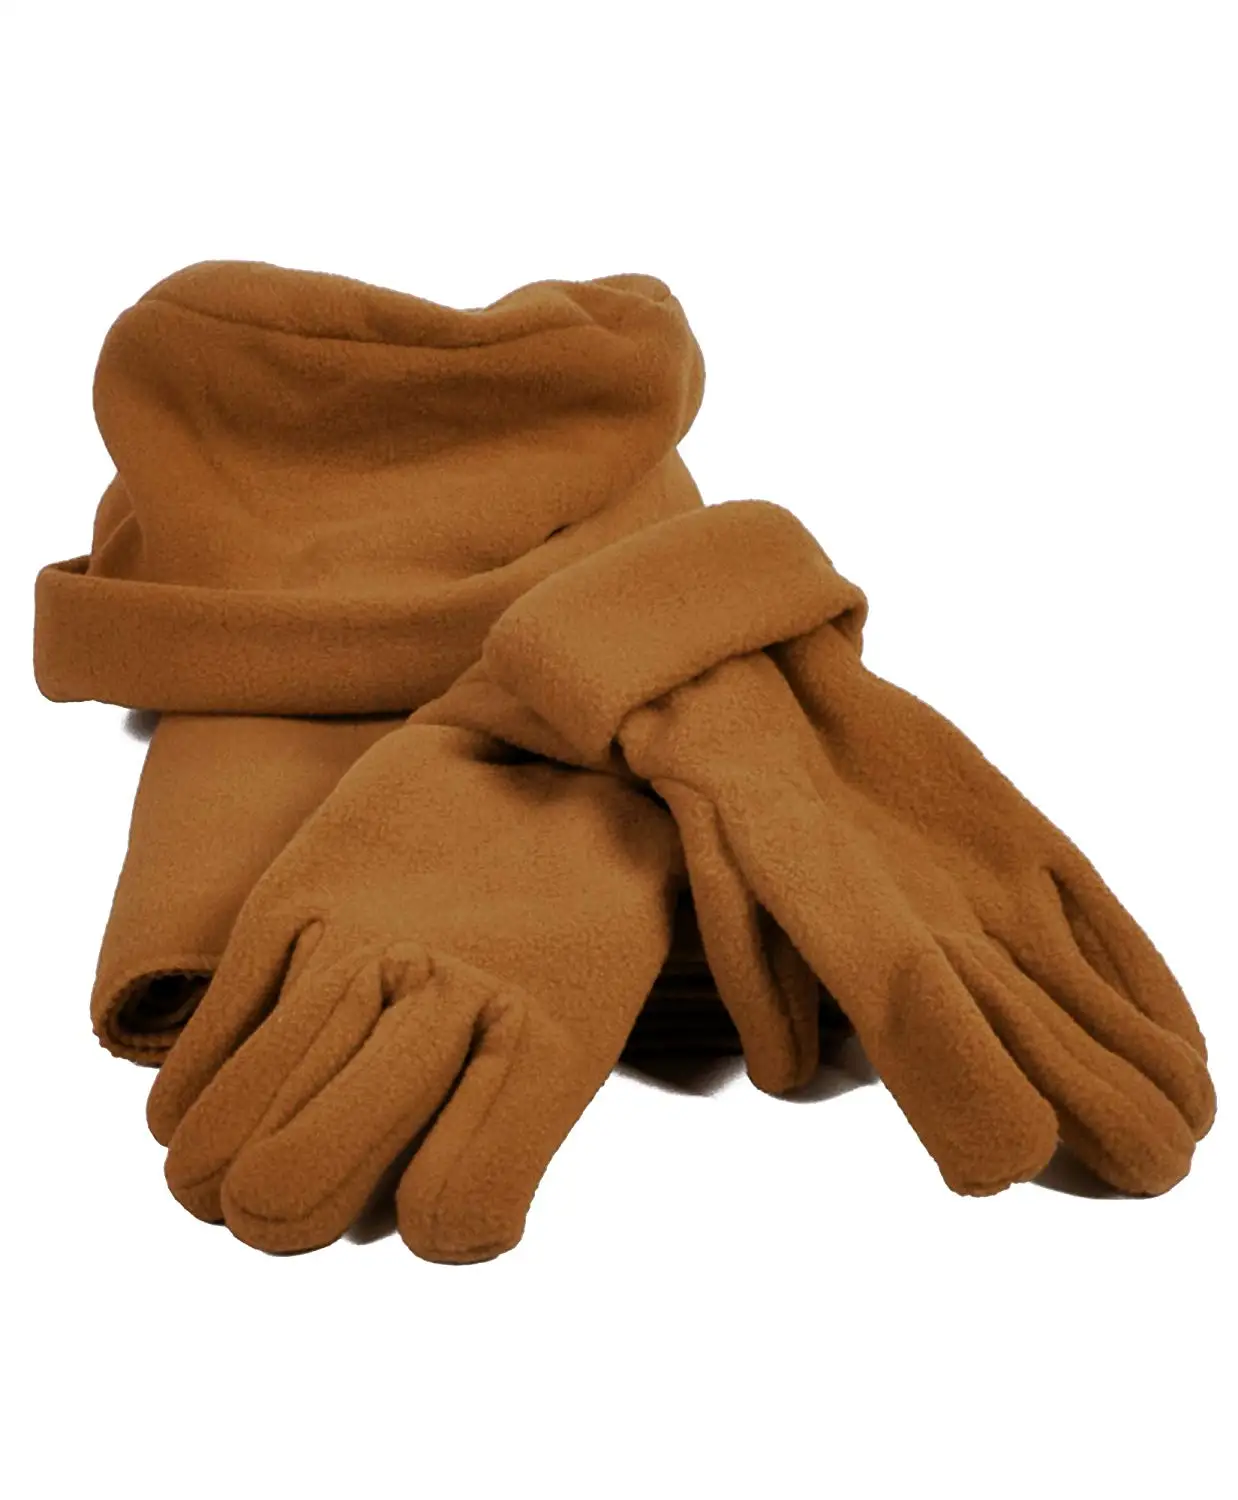 nice ladies gloves